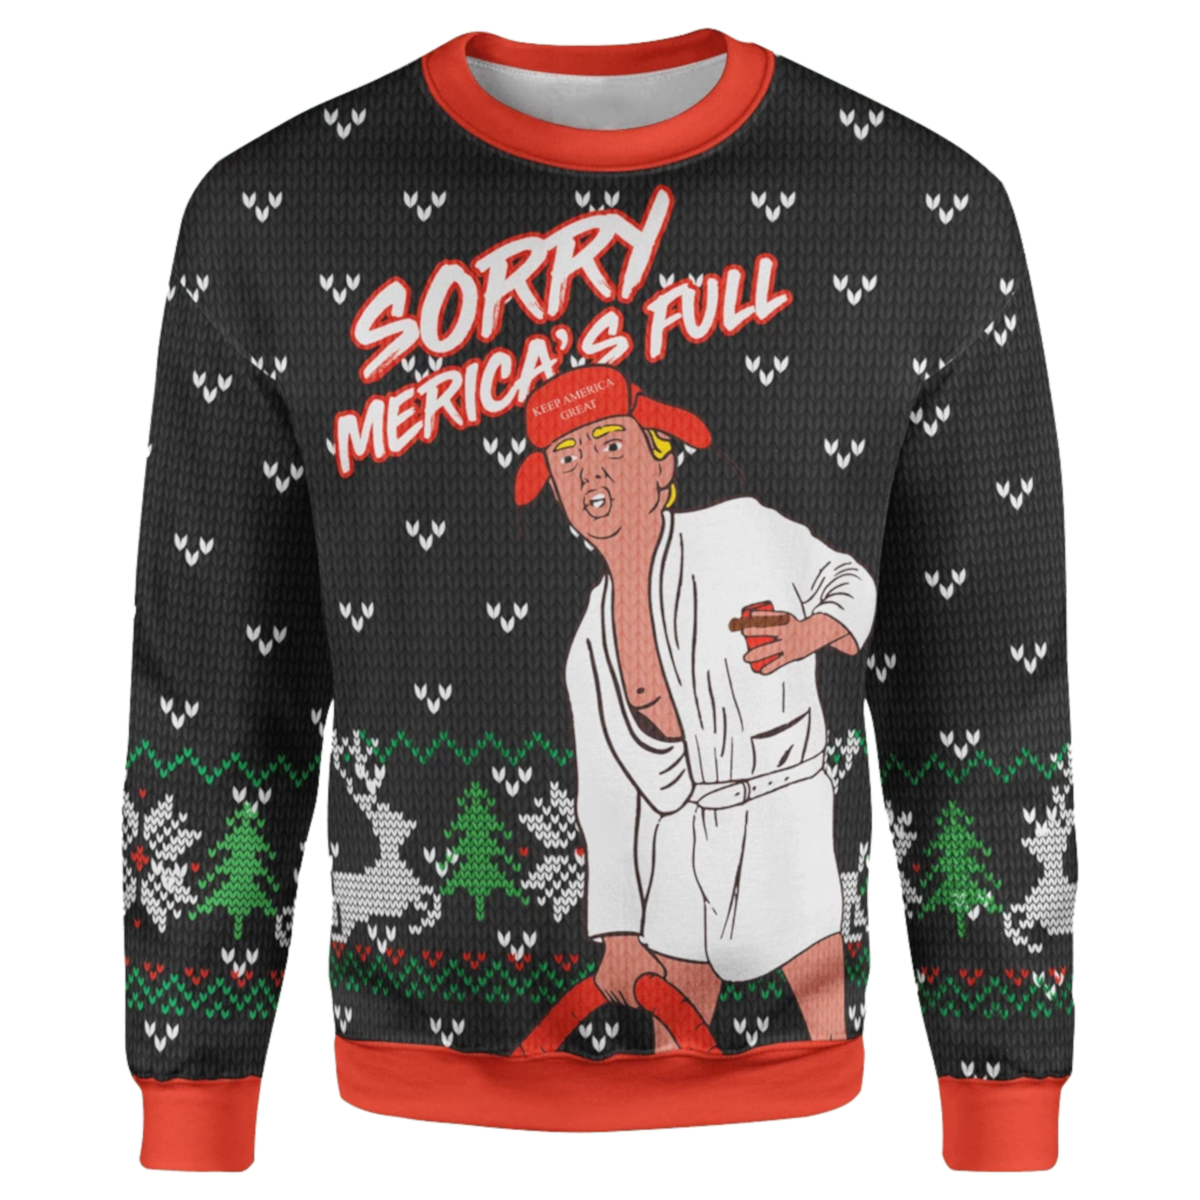 Sorry Merica's Full Christmas Sweater